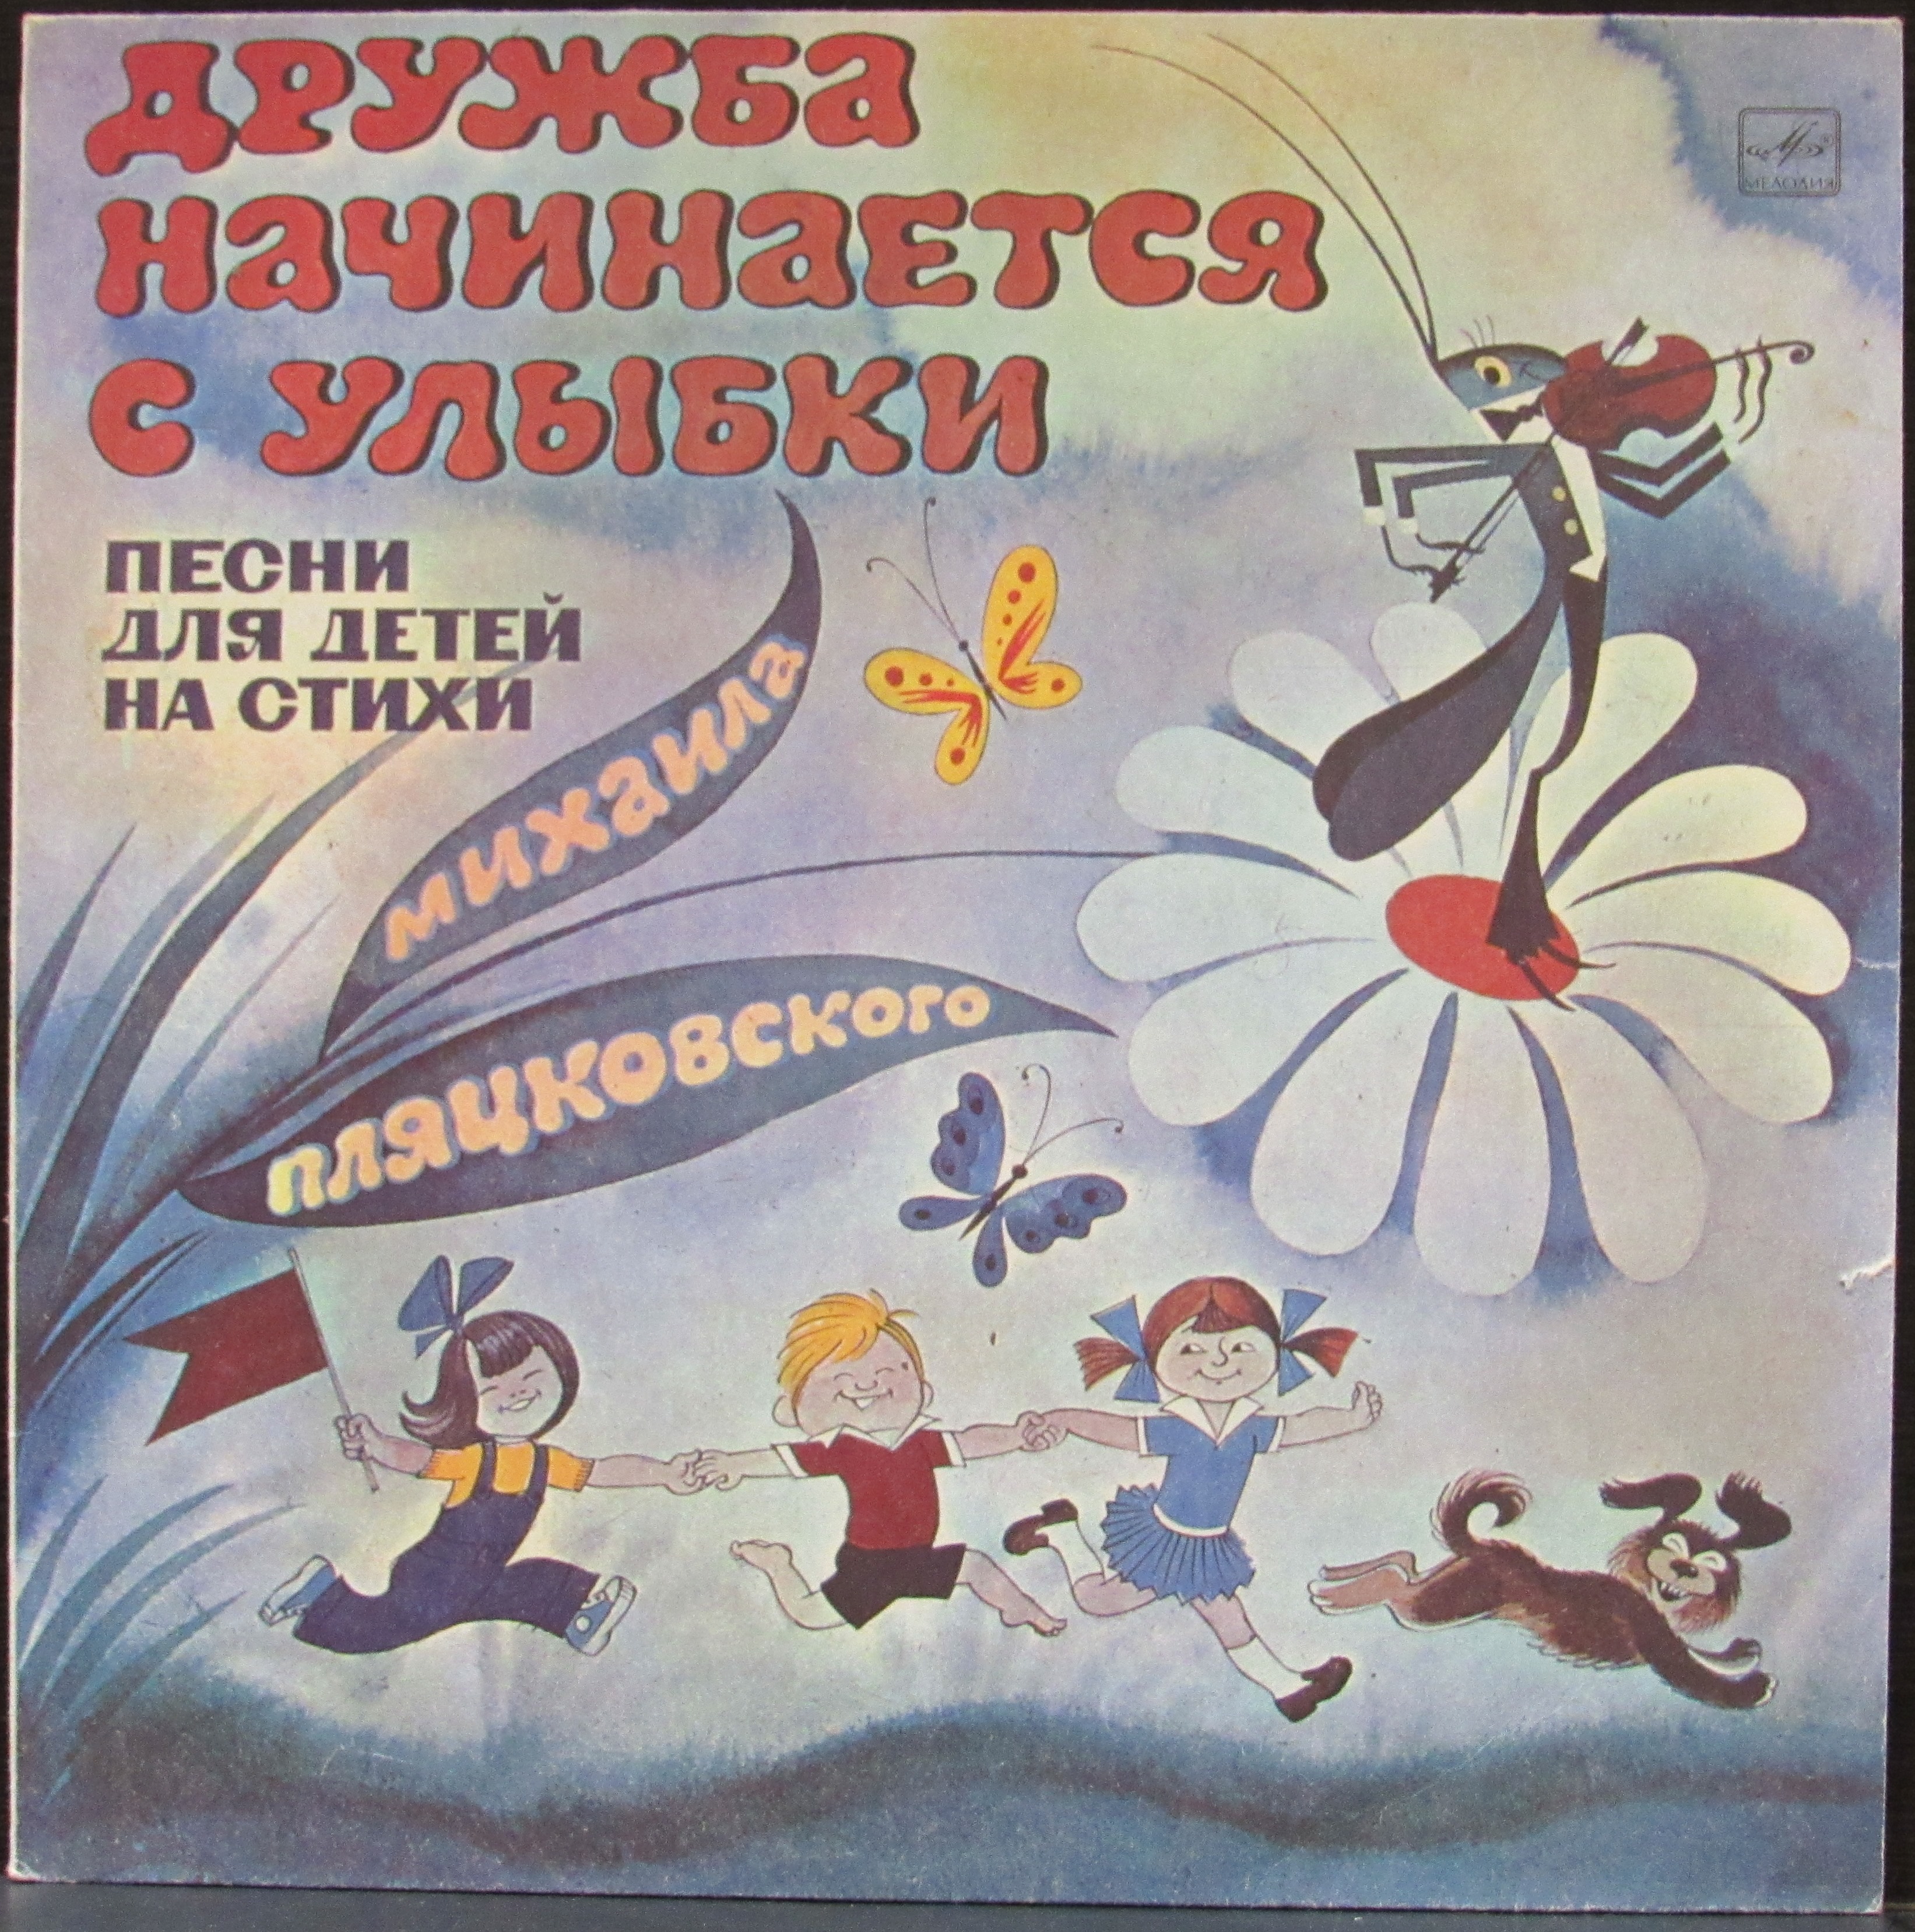 Детская музыка мелодия. Дружба начинается с улыбки виниловая пластинка. Детские пластинки. Советские детские пластинки.